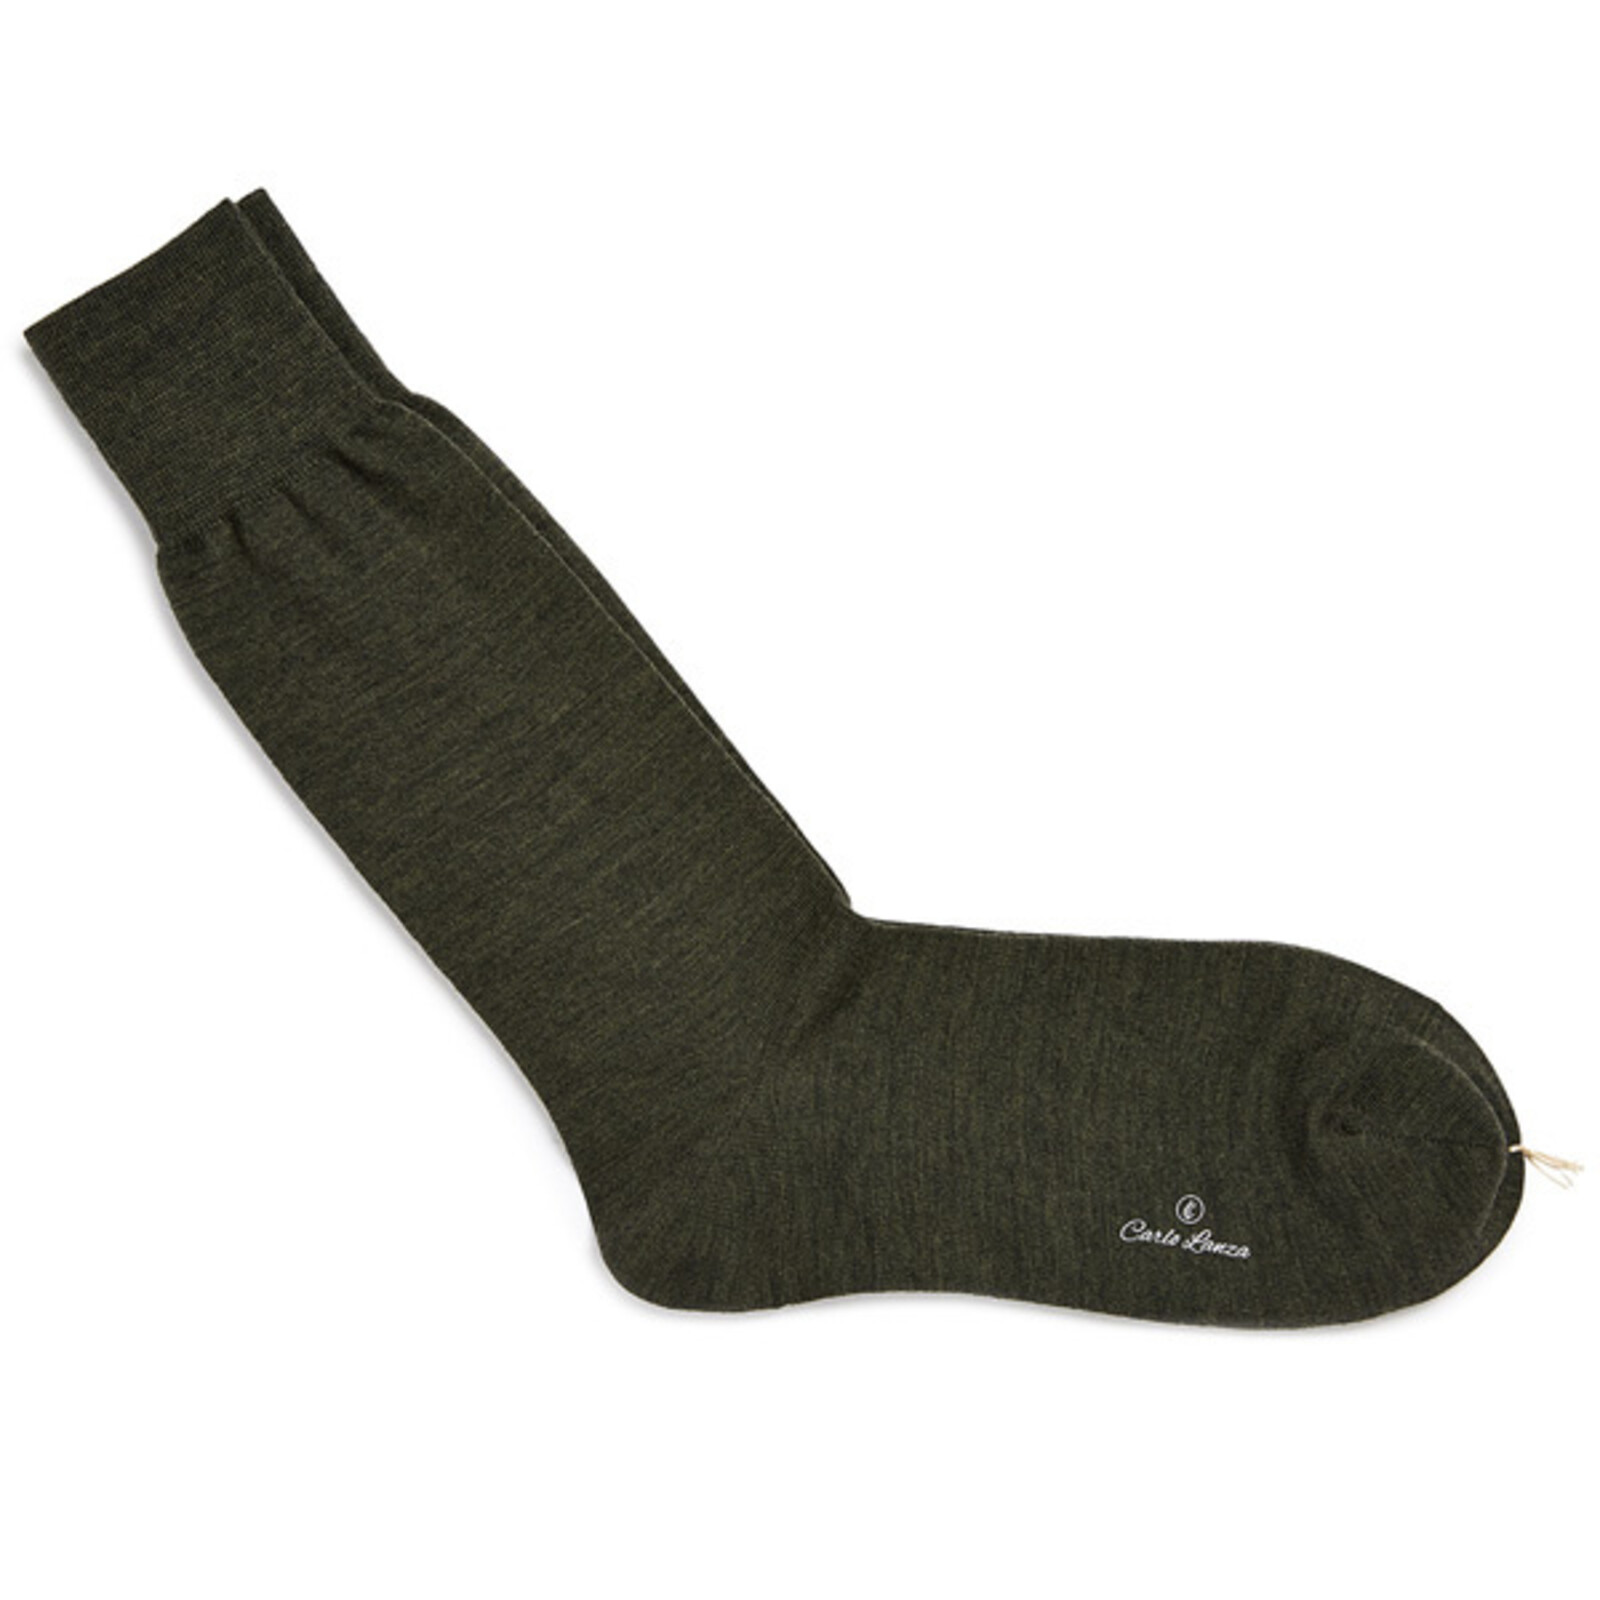 Carlo Lanza Green grey wool socks